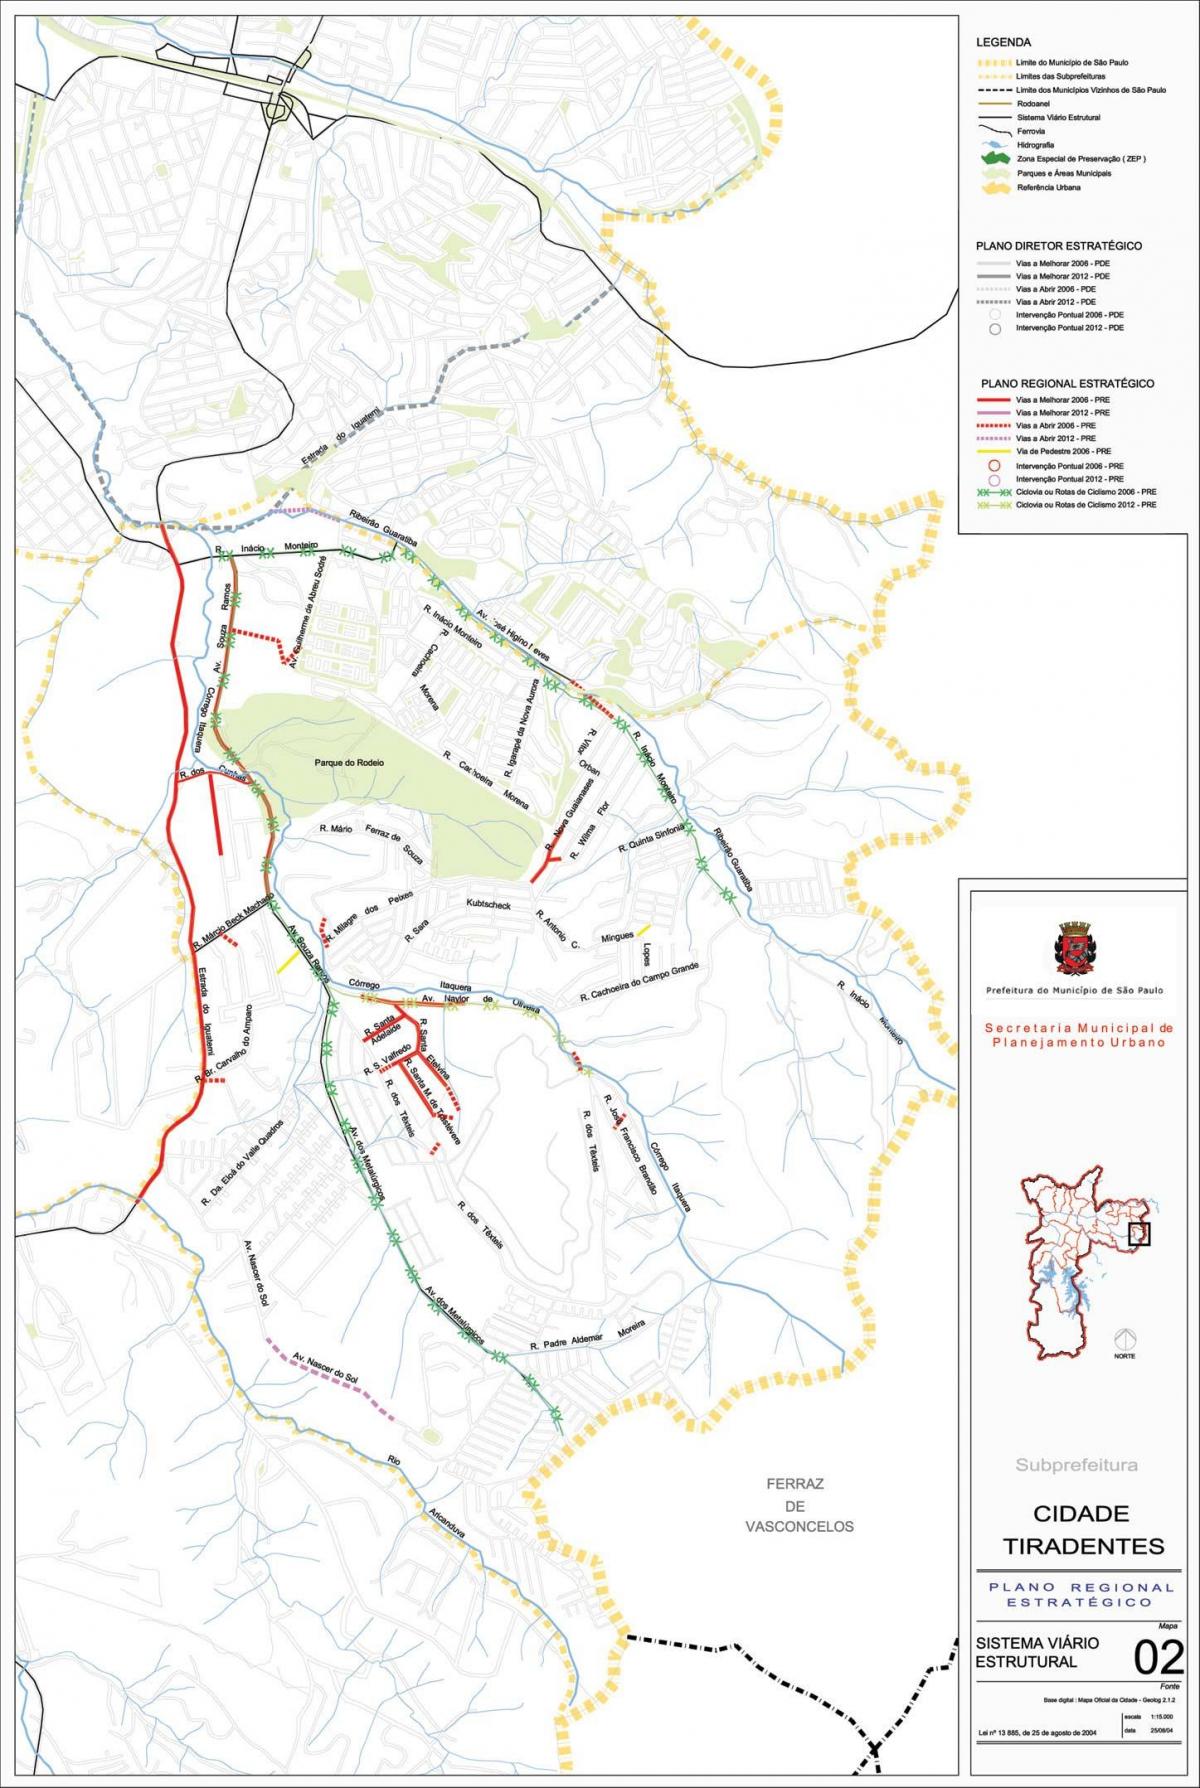 نقشه کیدد تیردنتس São Paulo - جاده